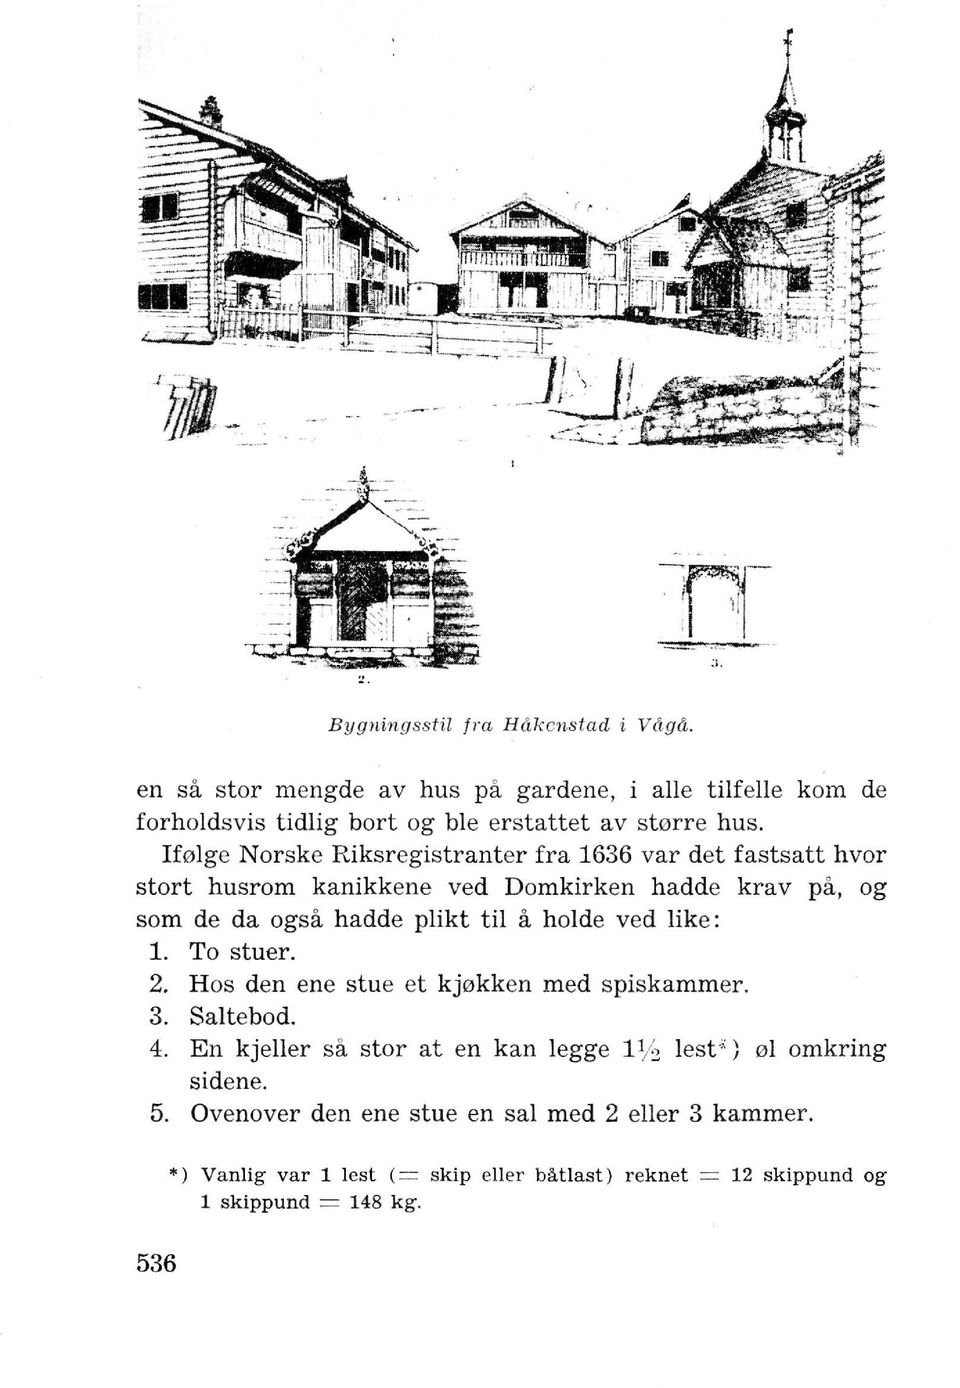 Ifolge Norske Riksregistranter fra 1636 var det fastsatt hvor stort husrom kanikkene ved Domkirken hadde krav pa, og som de da ogsa hadde plikt til a holde